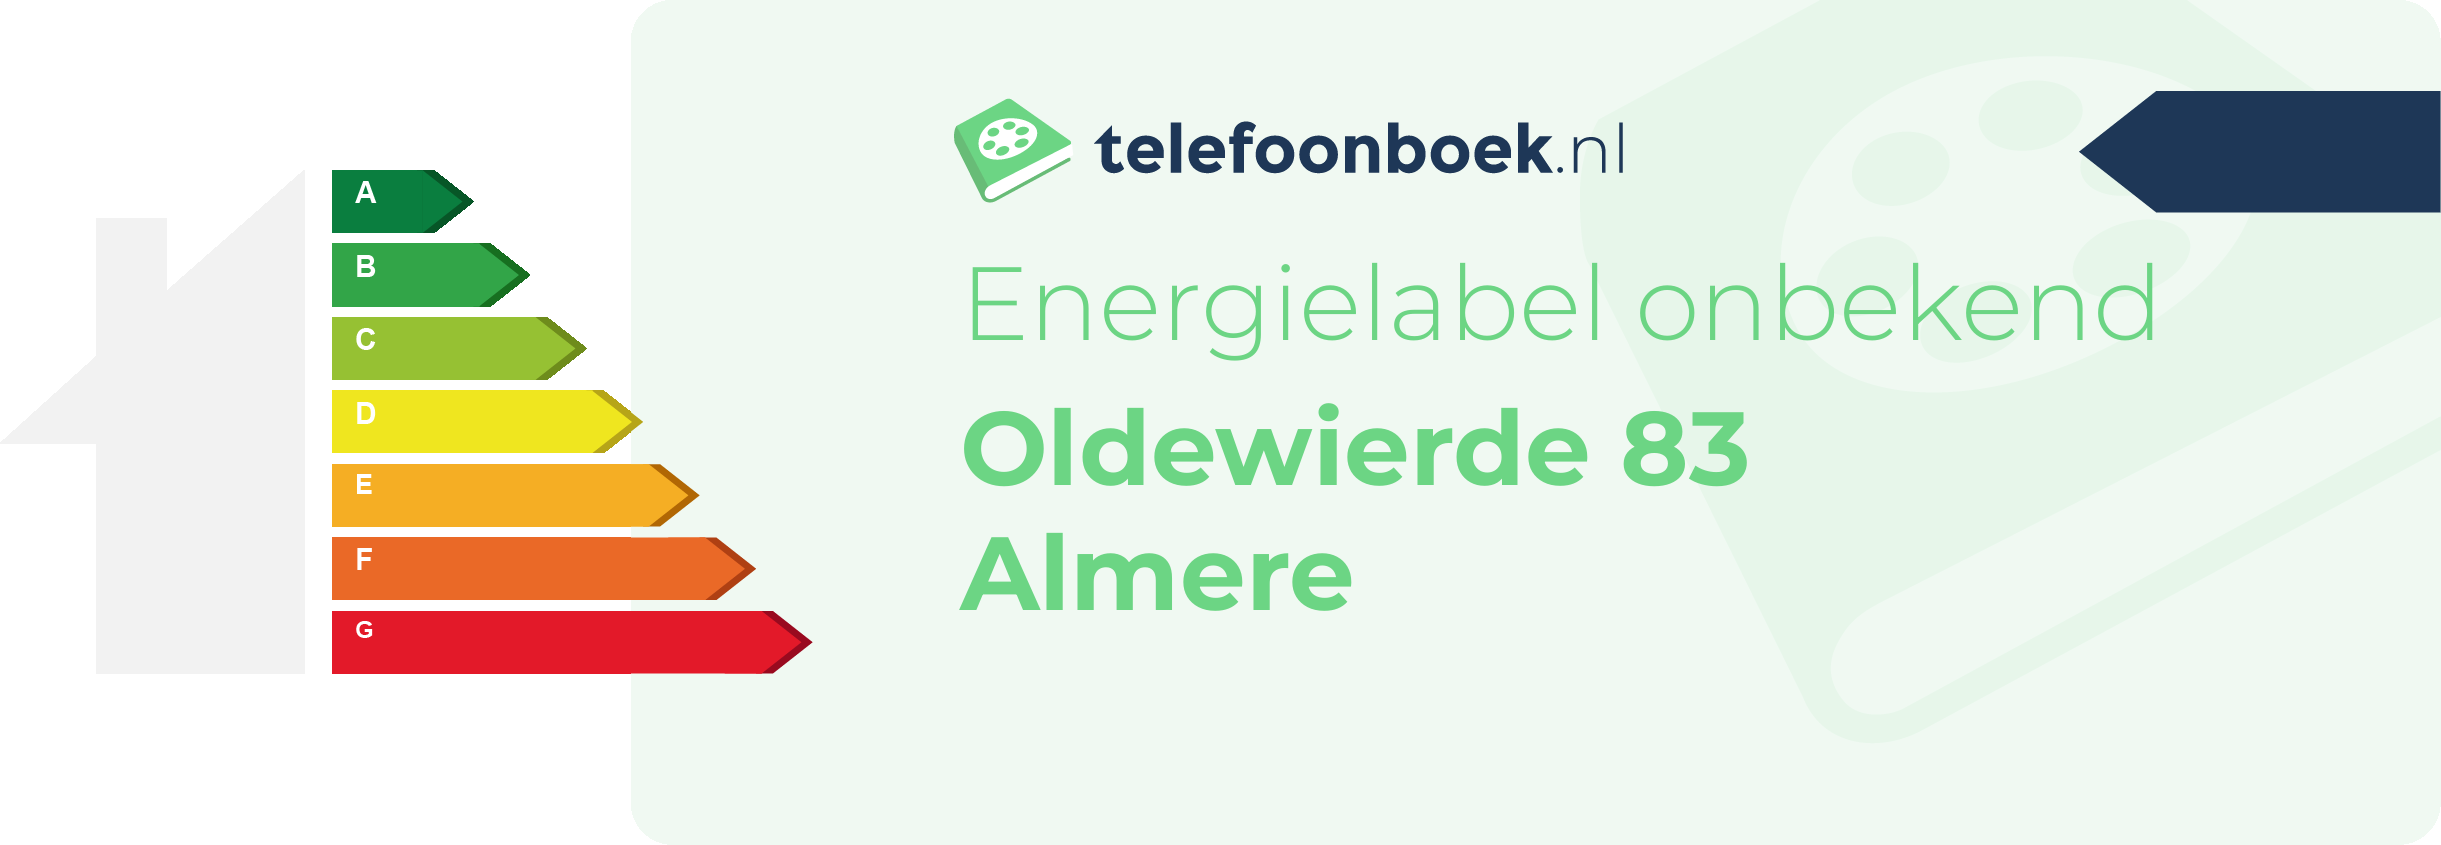 Energielabel Oldewierde 83 Almere